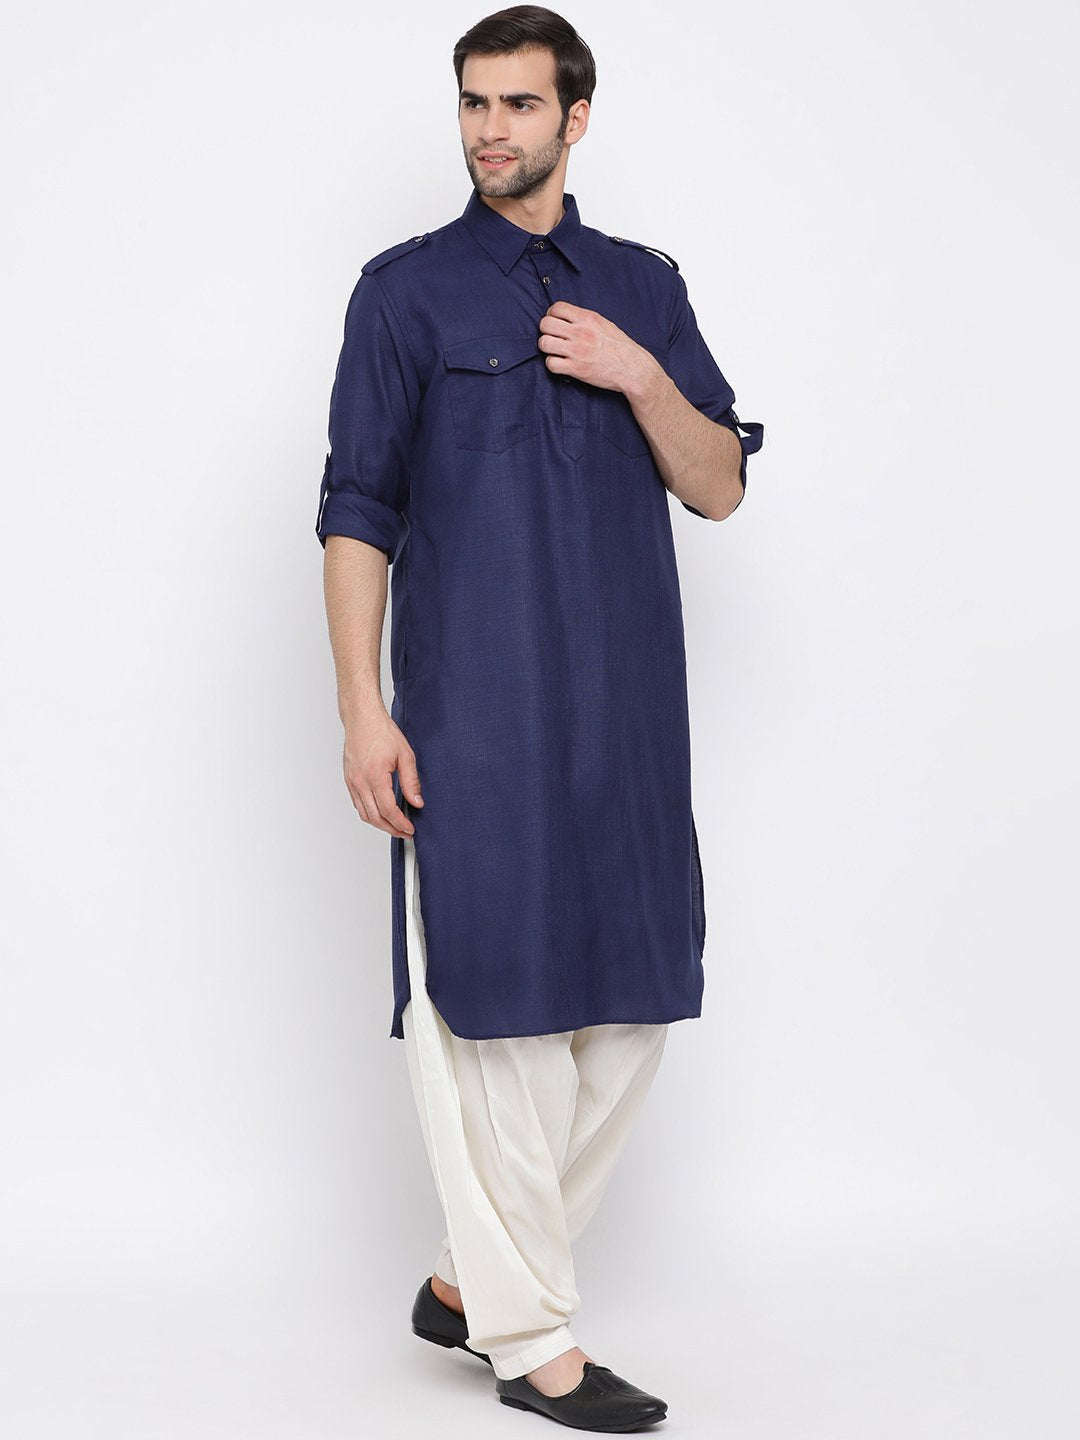 Men's Blue Cotton Blend Pathani Suit Set - Vastramay